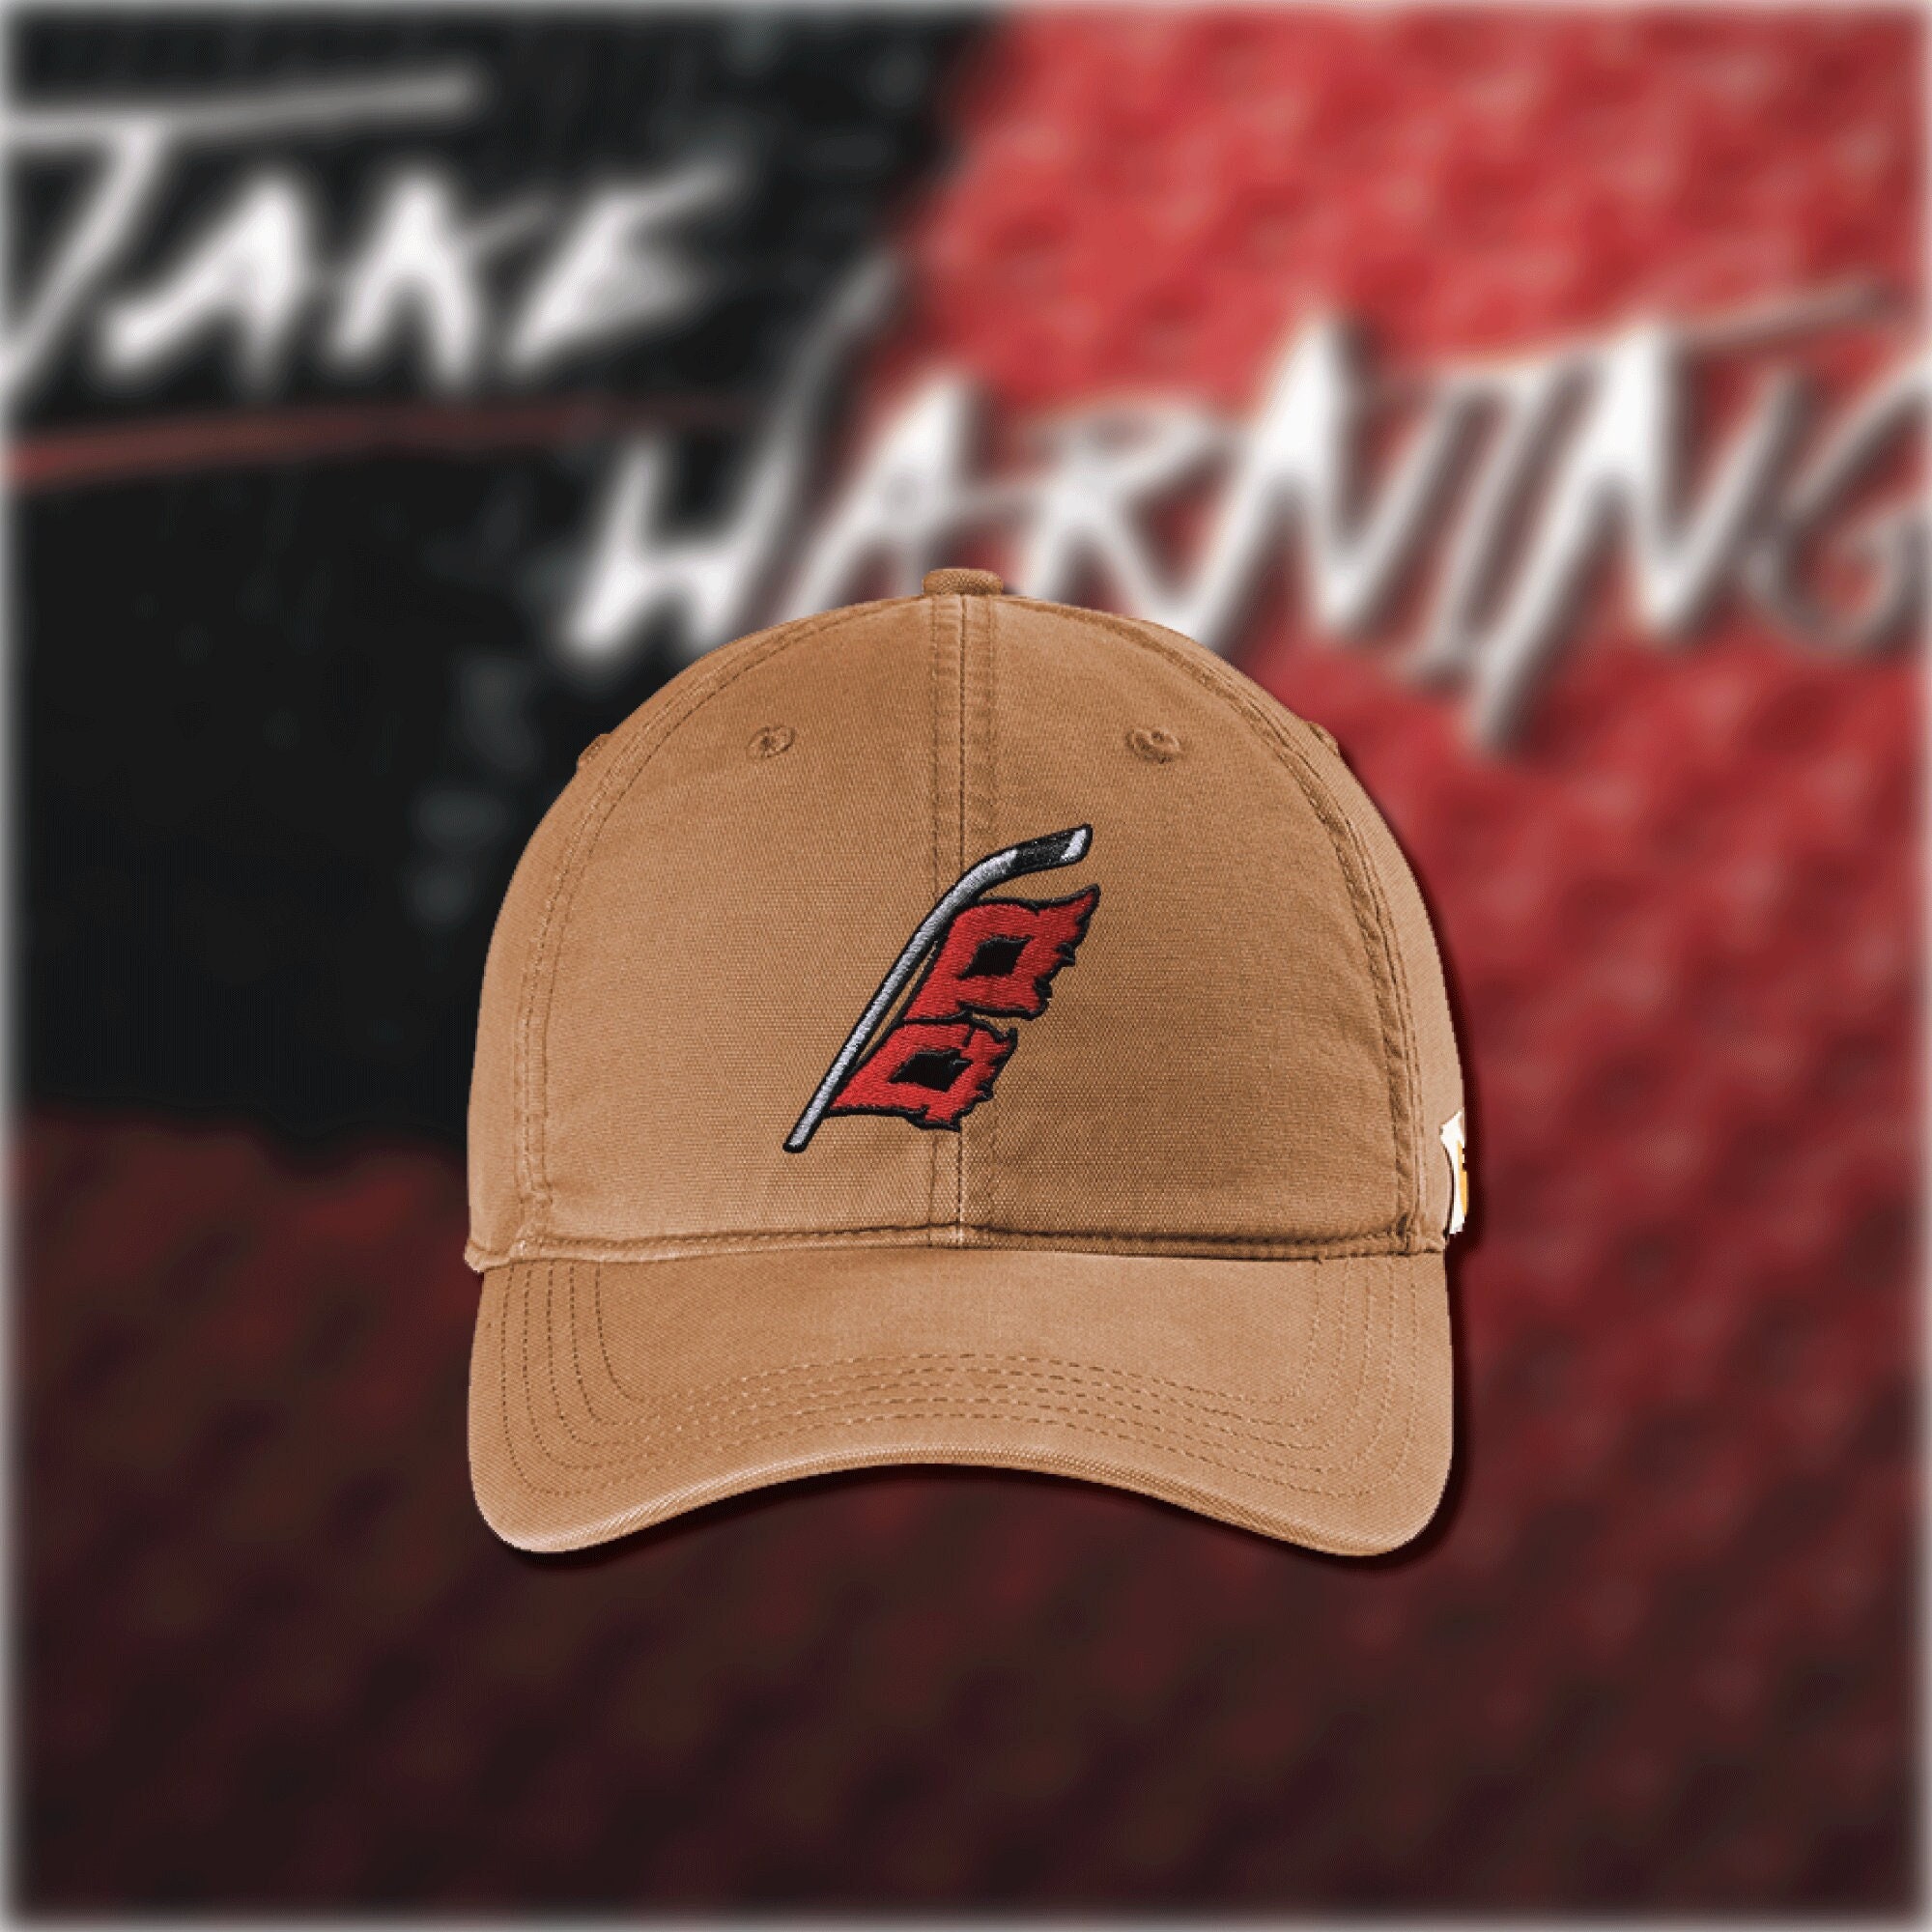 New Jersey Devils '47 Alternate Logo Clean Up Adjustable Hat - Black